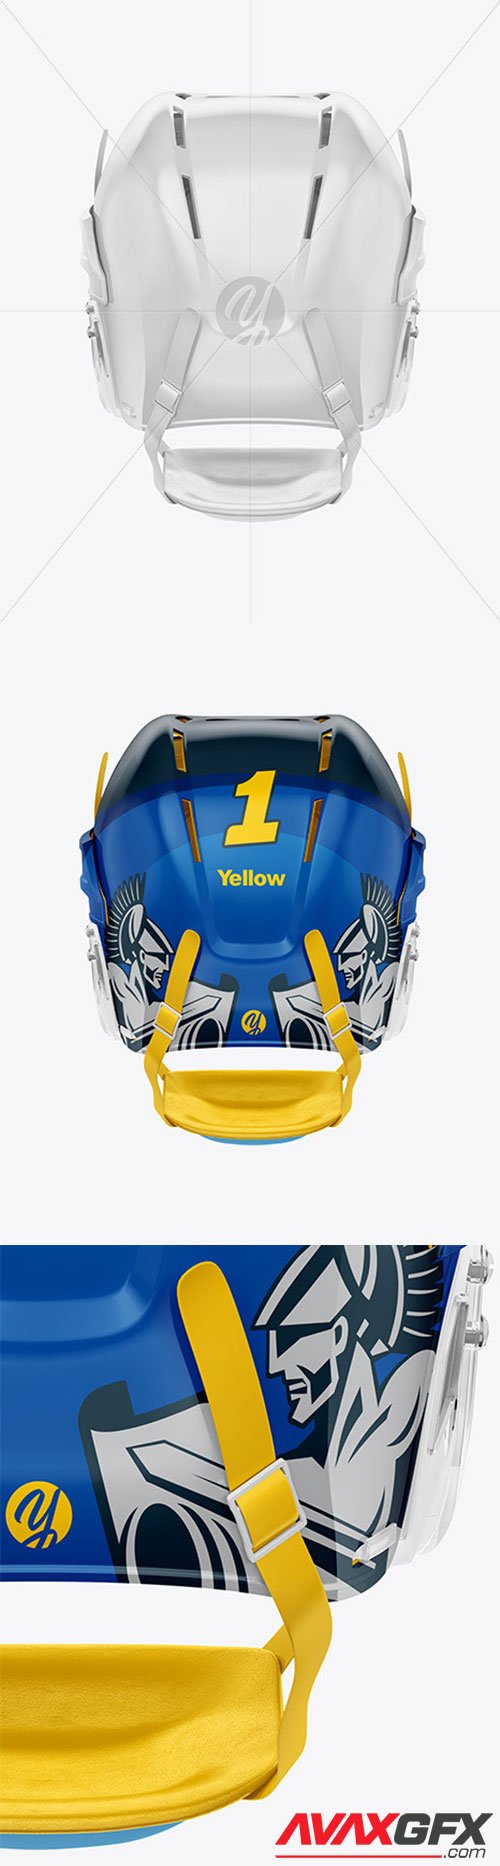 Hockey Helmet Mockup 62169